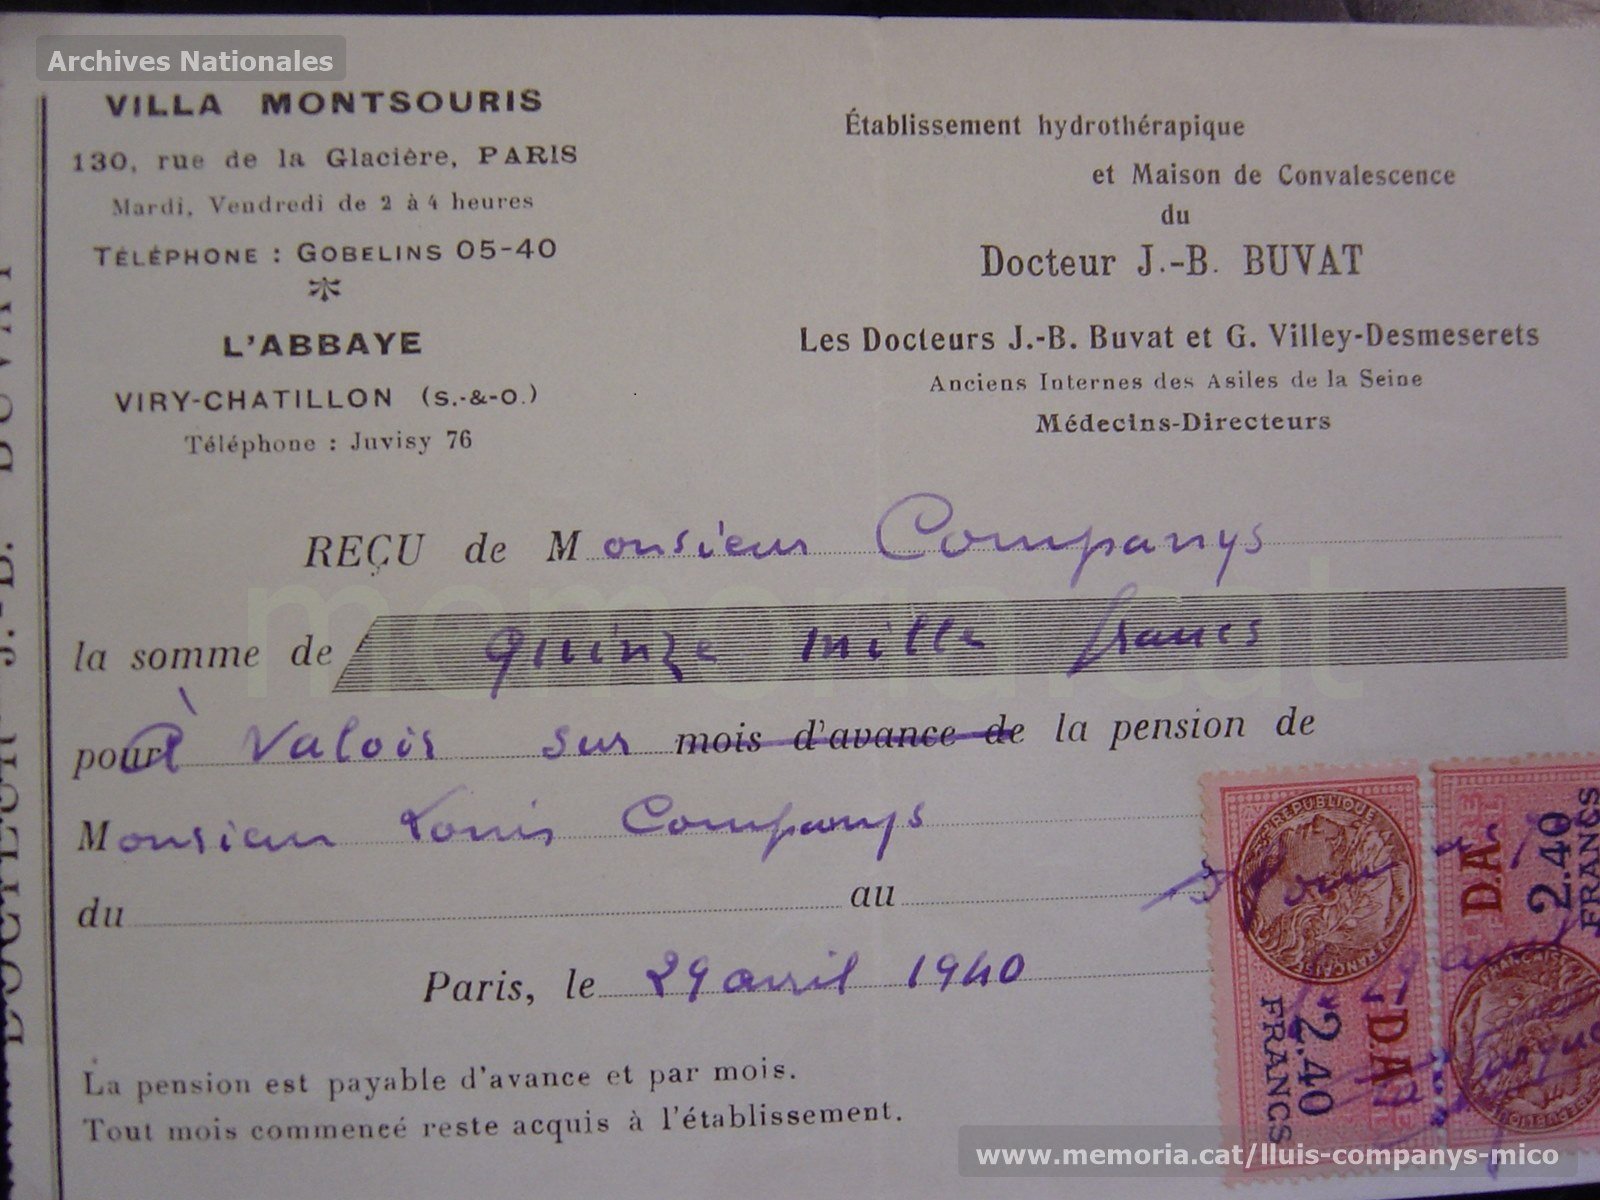 El president Companys arriba a l'exili de París. Rebut despesses hospitalàries del fill del president Companys. Font Memoria.cat